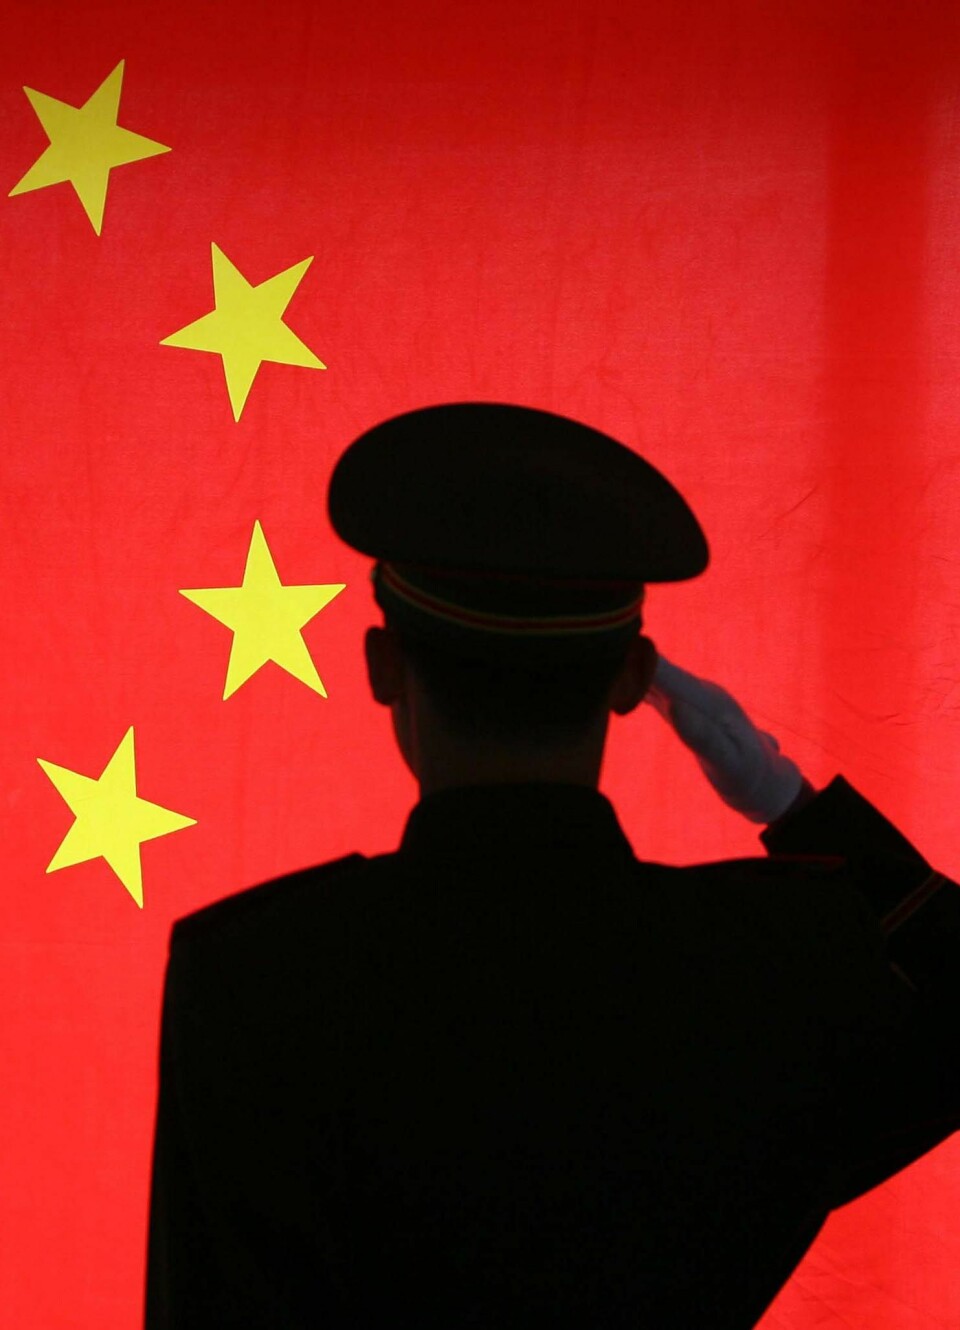 'Ethvert forsøk på å organisere direkte motstand mot de sittende kinesiske sentrale myndigheter blir møtt med kraftig represalier. (Illustrasjonsfoto: www.colourbox.no)'